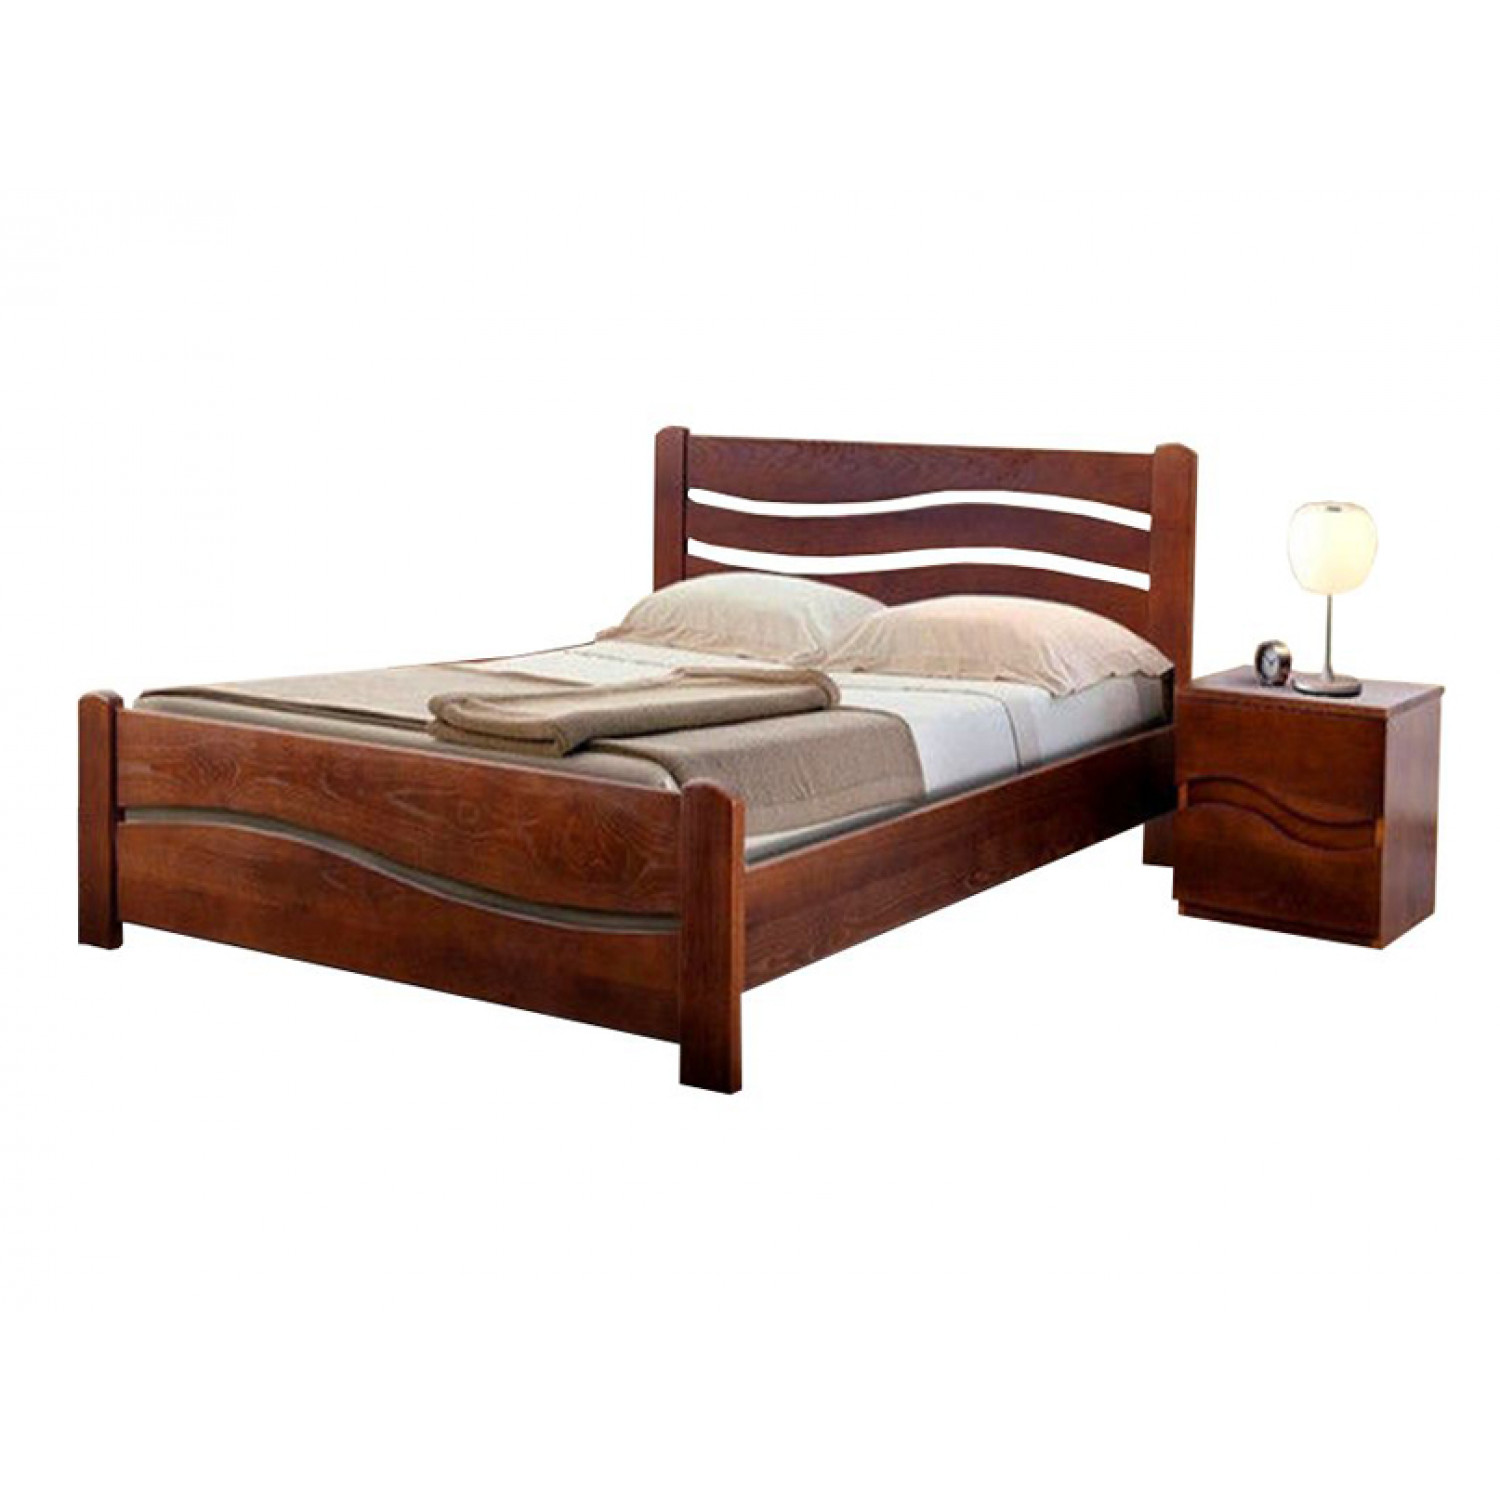 Купить деревянную кровать недорого. Кровать «Solea» 180 из массива сосны. Кровать волна 2 Муром. Кровать массив дерева 140х200 лазурит.